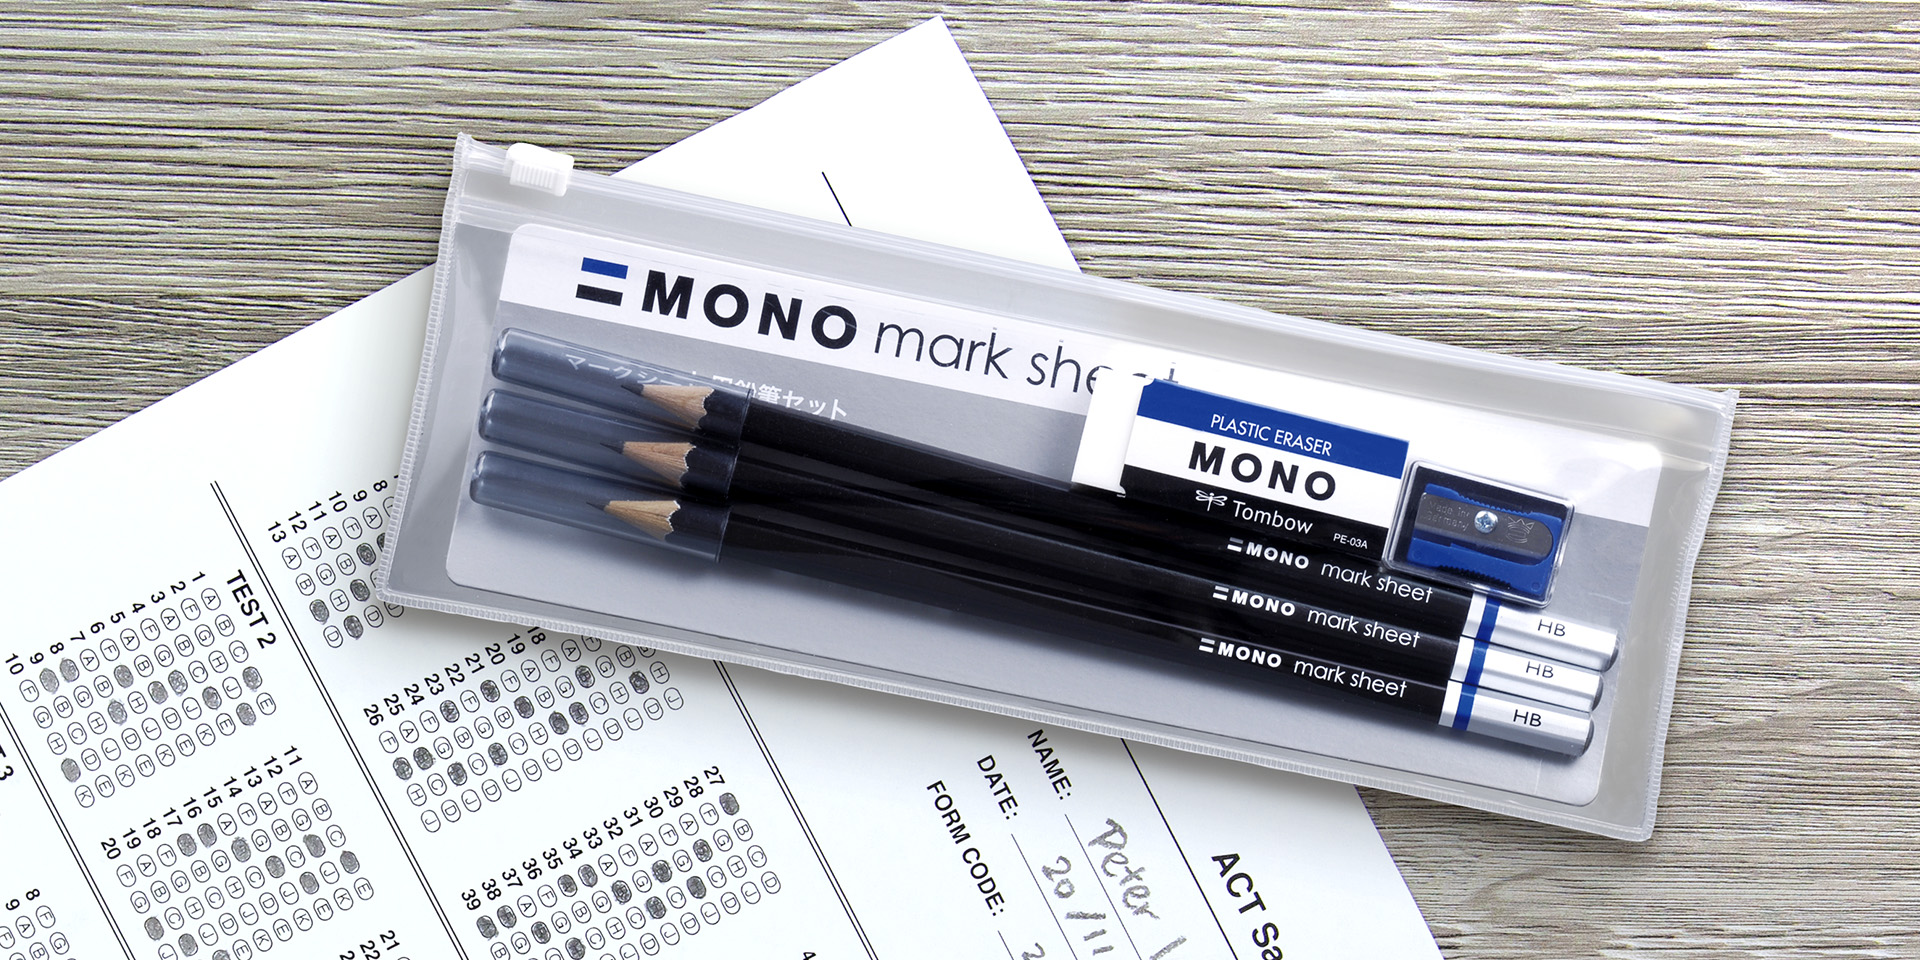 MONO mark sheet 考試用HB鉛筆套裝– 永一有限公司